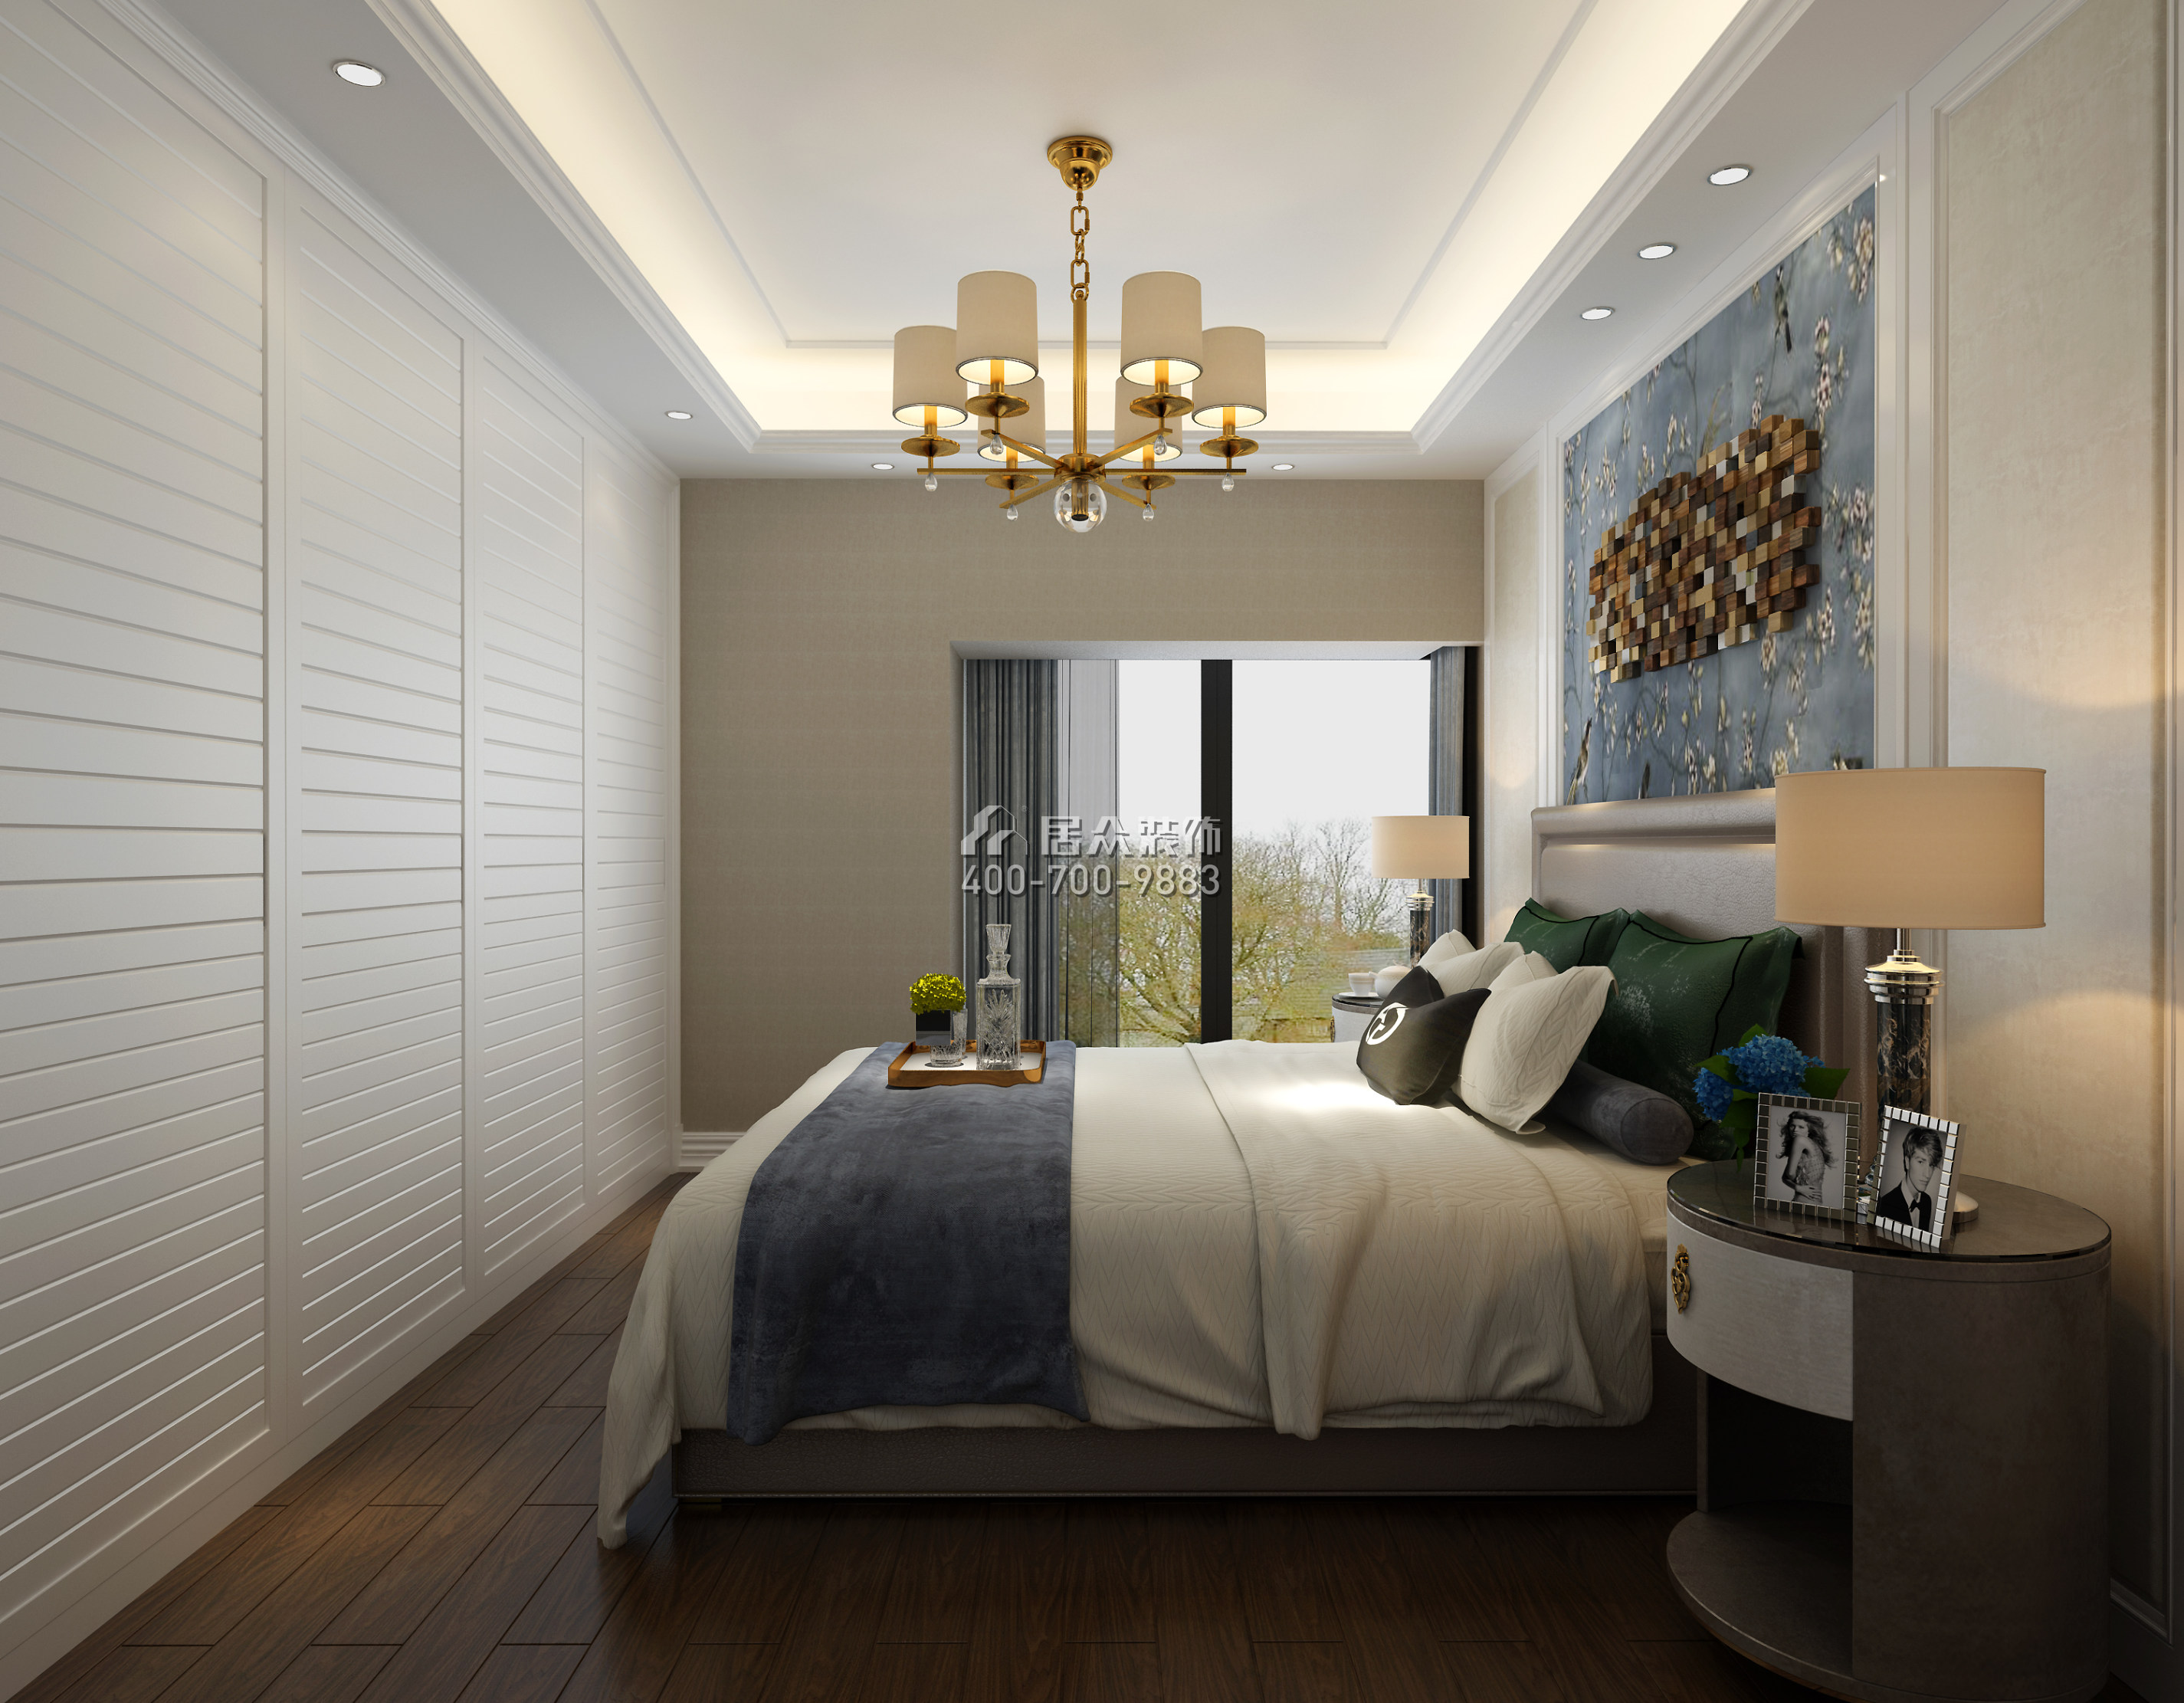 山语海110平方米混搭风格平层户型卧室装修效果图